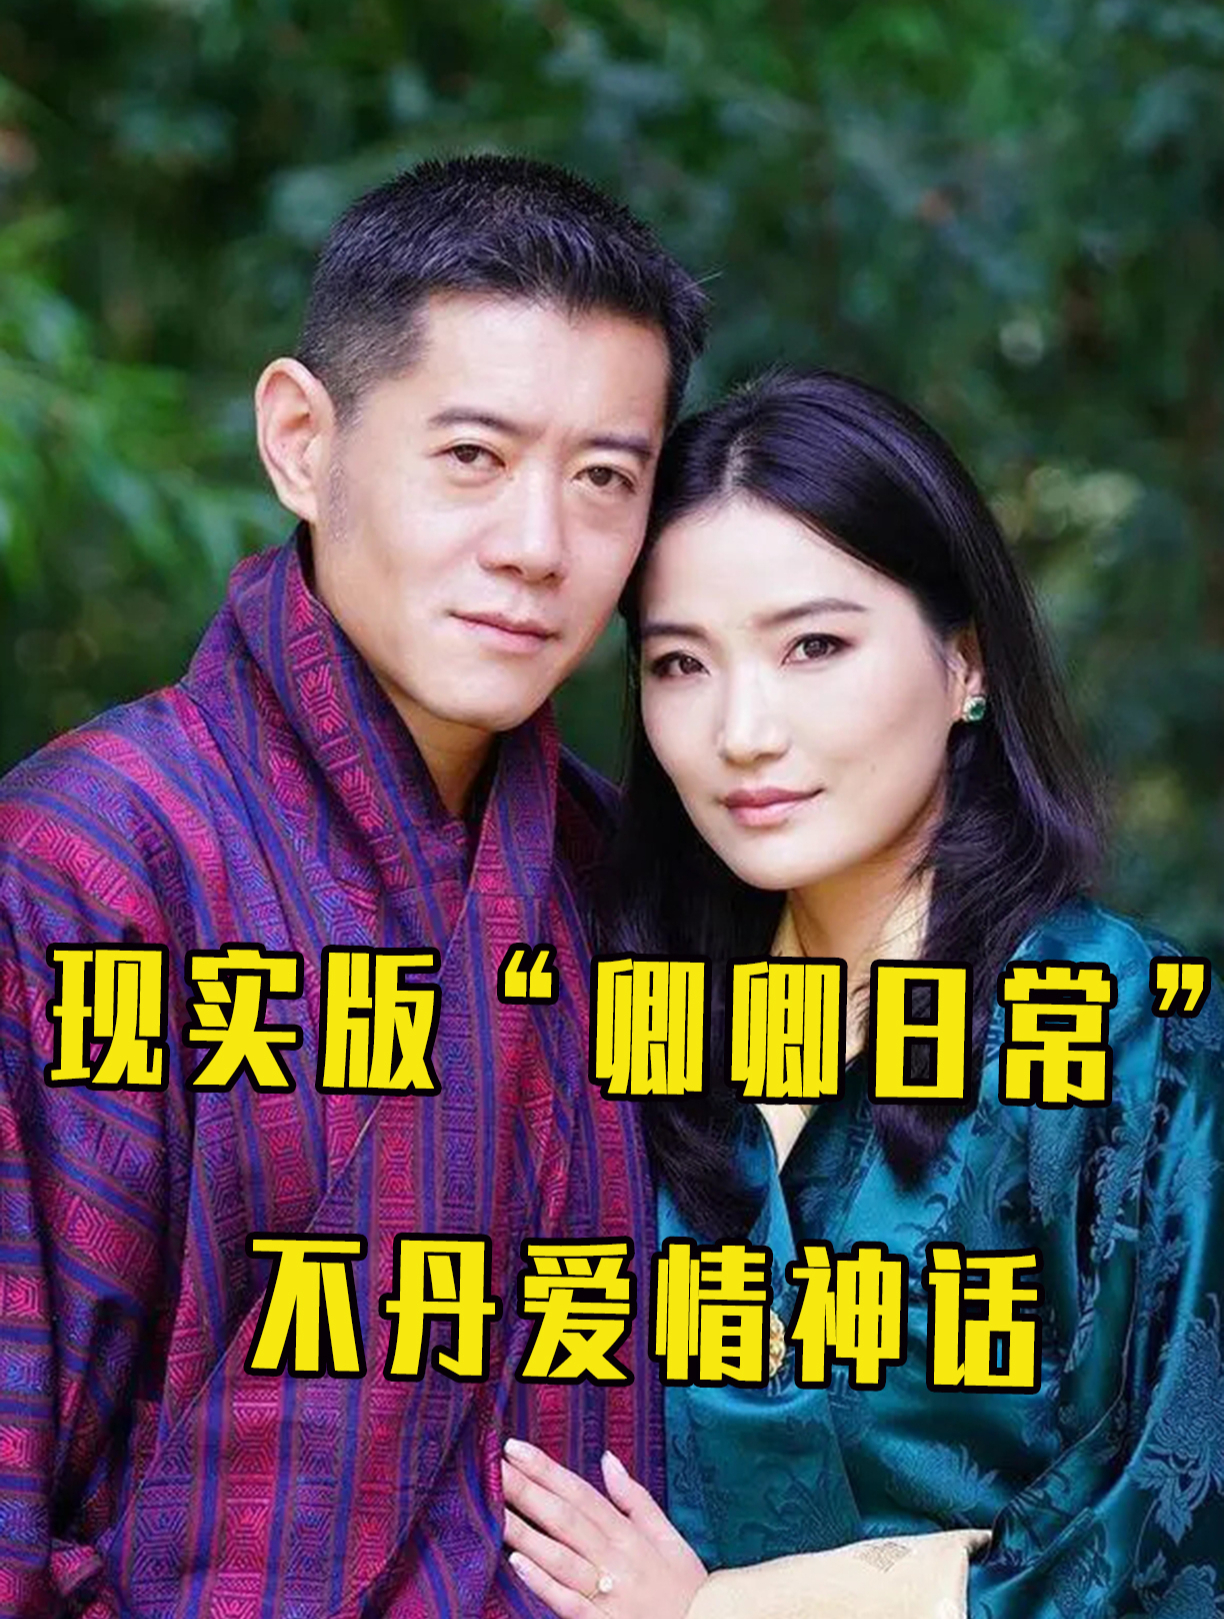 现实版卿卿日常:不丹国王为妻子更改婚姻制,如今感情疑破裂